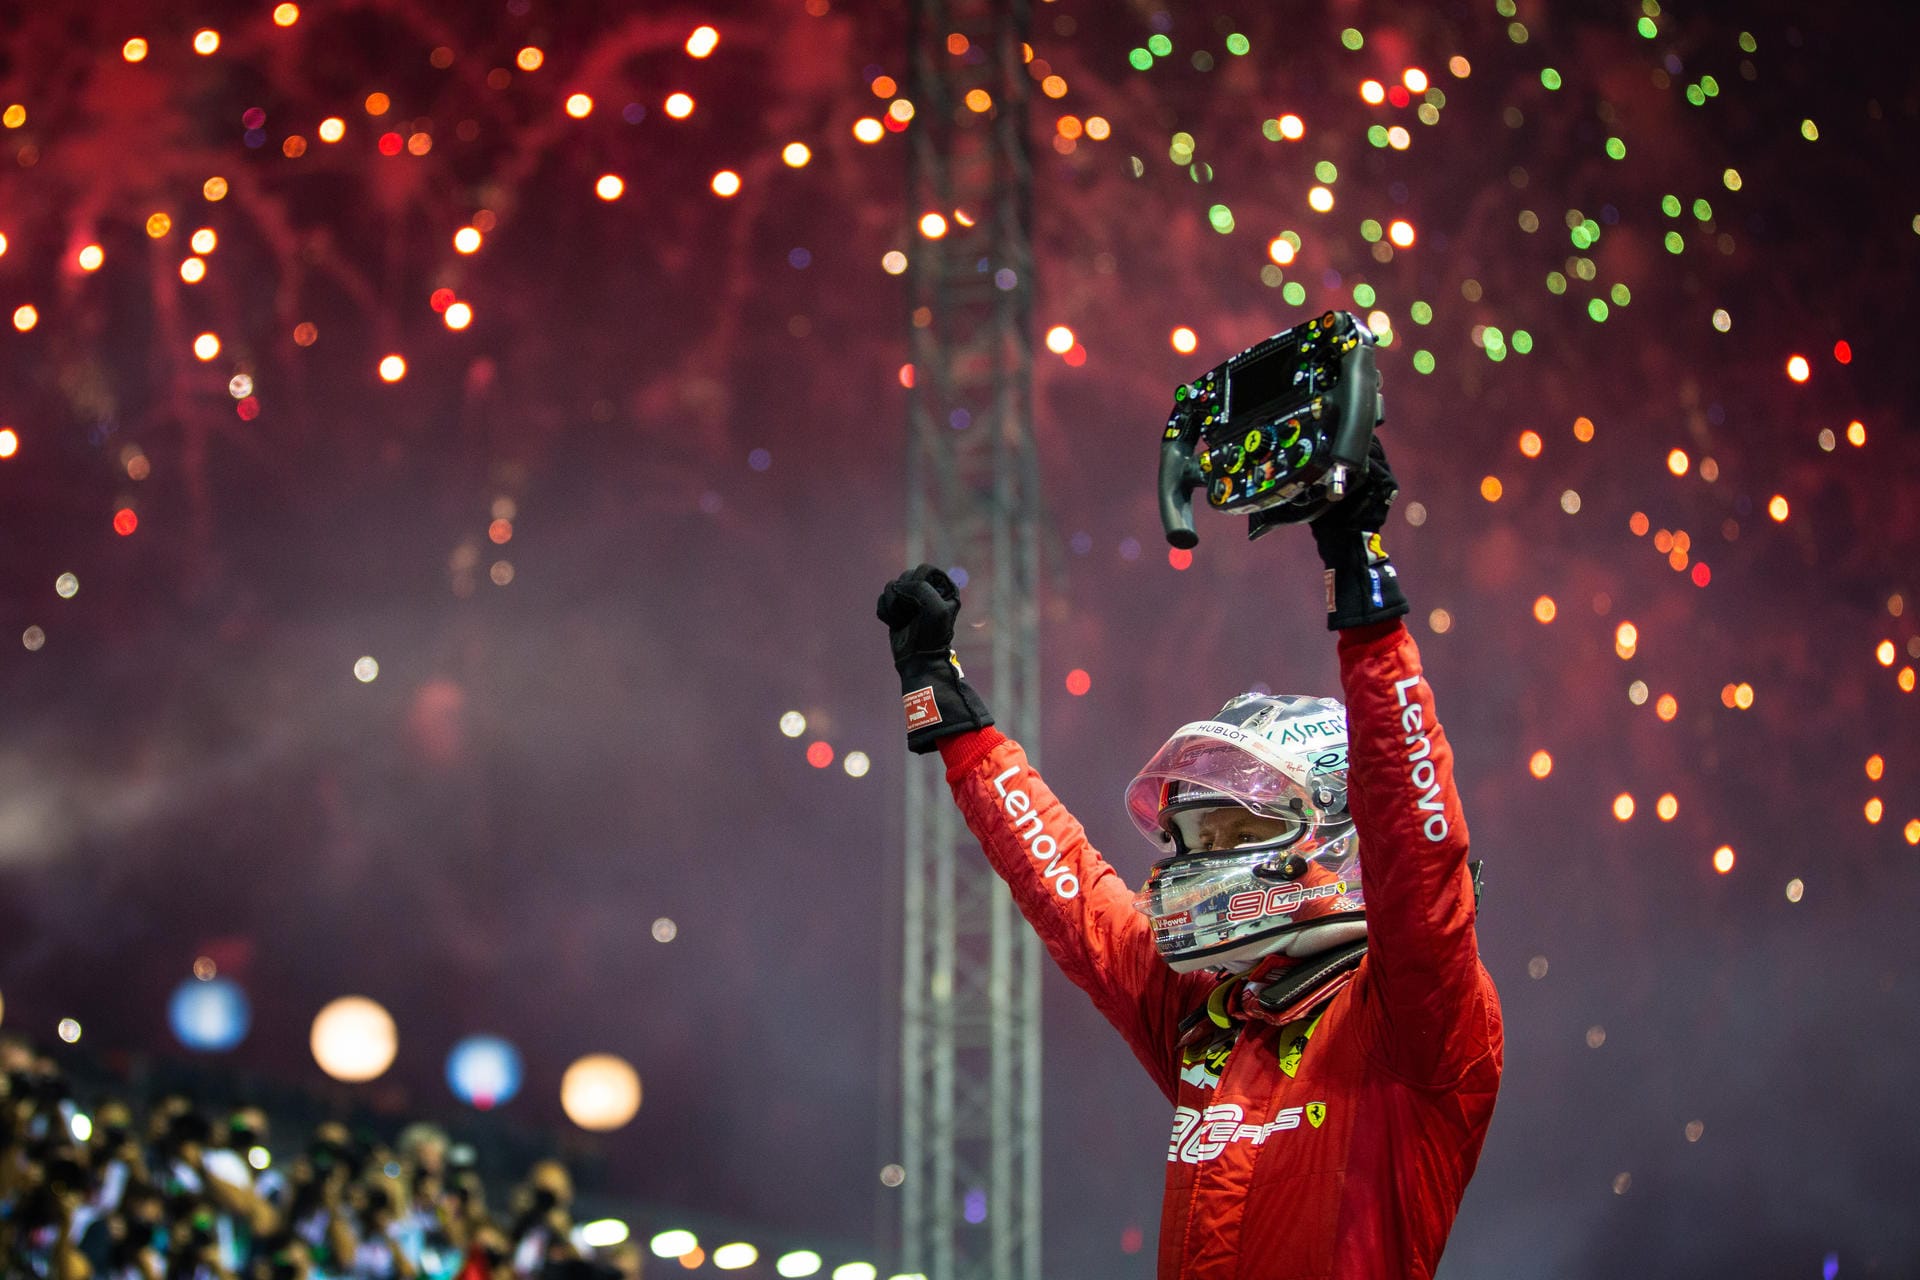 Mehr als ein Jahr hat Sebastian Vettel auf einen Sieg warten müssen, am Sonntag triumphierte der deutsche Ferrari-Pilot beim Nachtrennen von Singapur – und versetzte Teamkollege Charles Leclerc sowie Red-Bull-Pilot Max Verstappen auf die Plätze. "Sebastian Vettel ist in Singapur der Befreiungsschlag gelungen", schreibt beispielsweise der Kurier. Die internationalen Pressestimmen in der Übersicht.